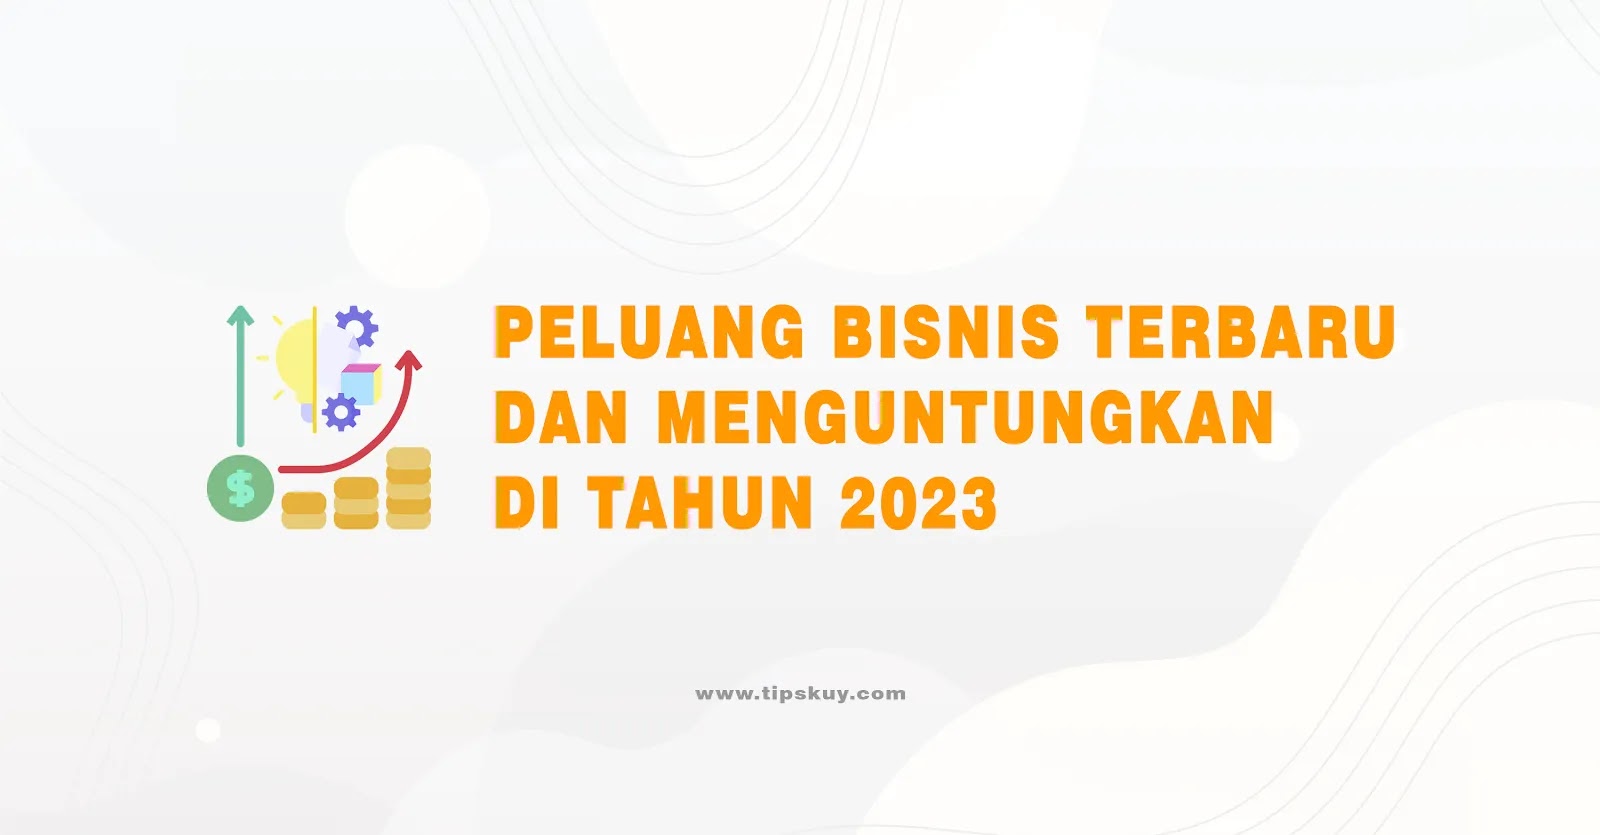 Peluang Bisnis Terbaru dan Menguntungkan di Tahun 2023